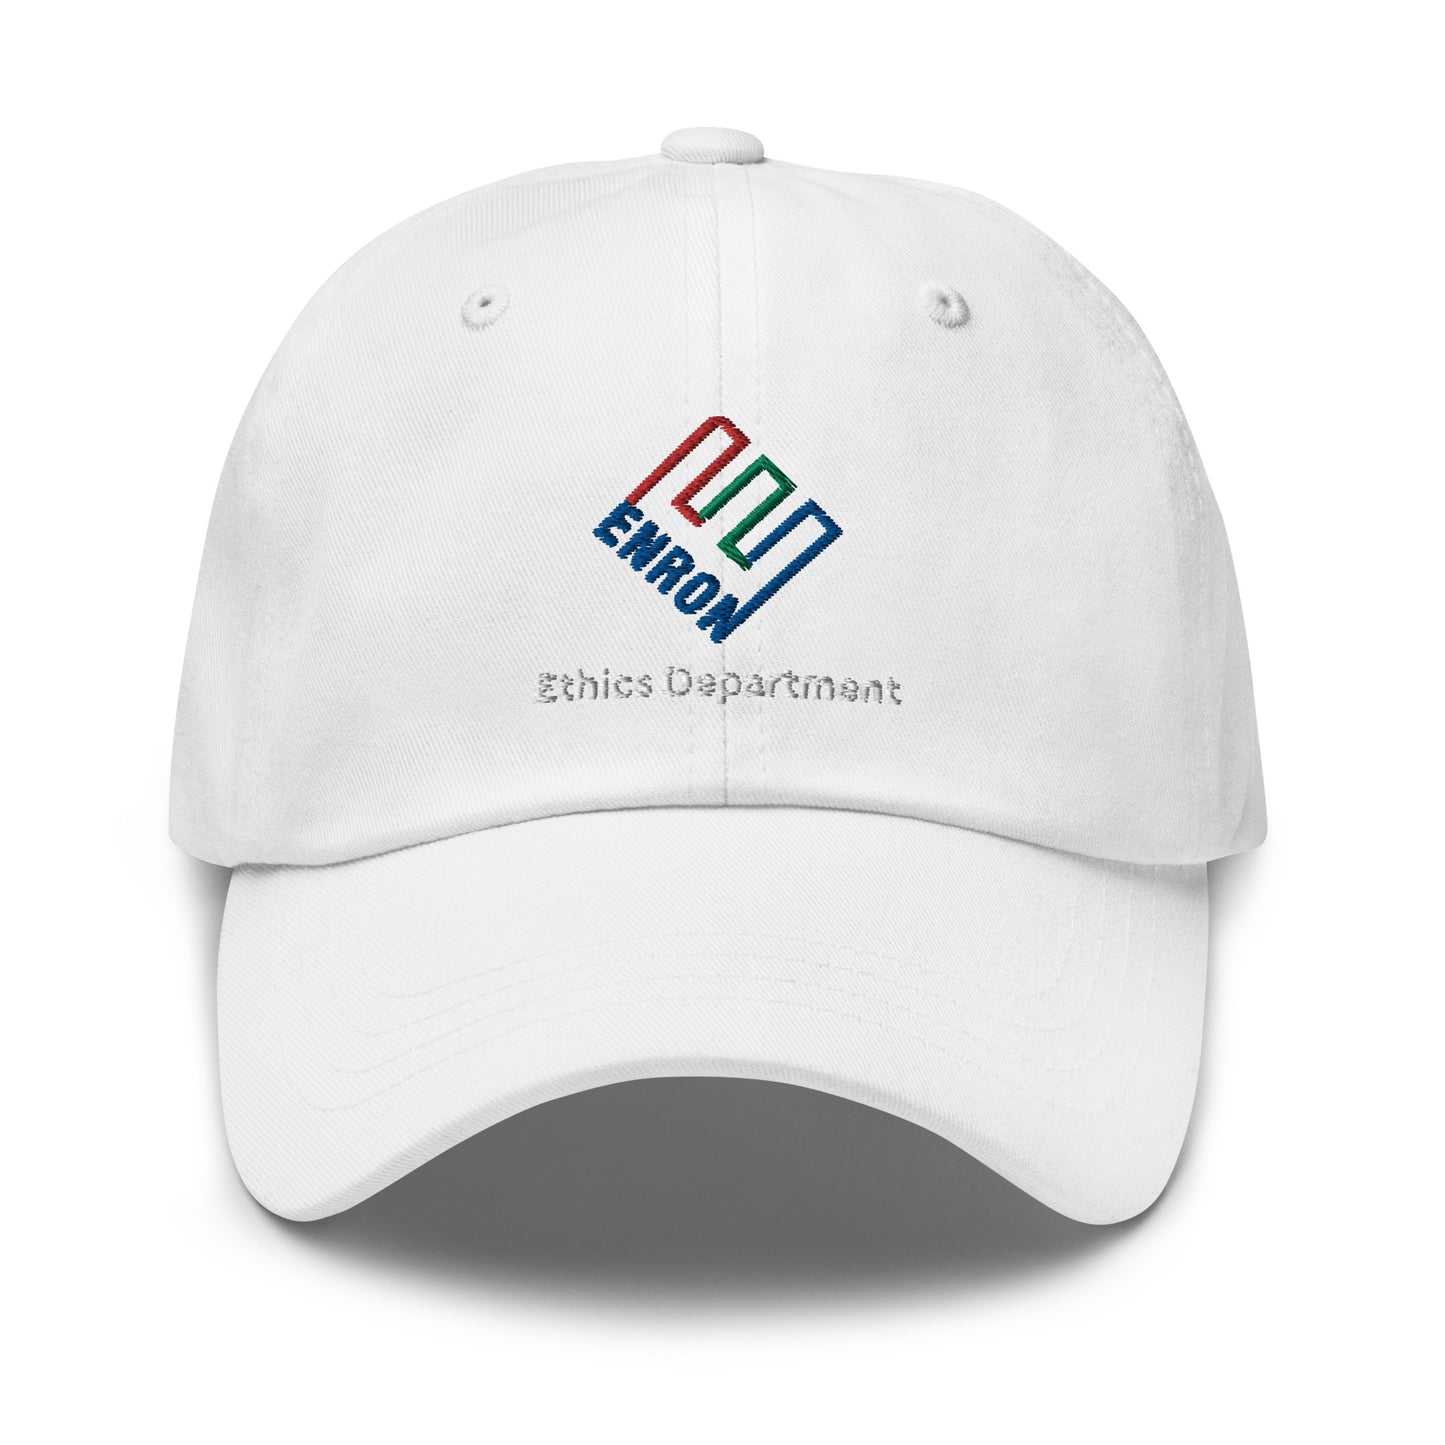 Enron Ethics Cap